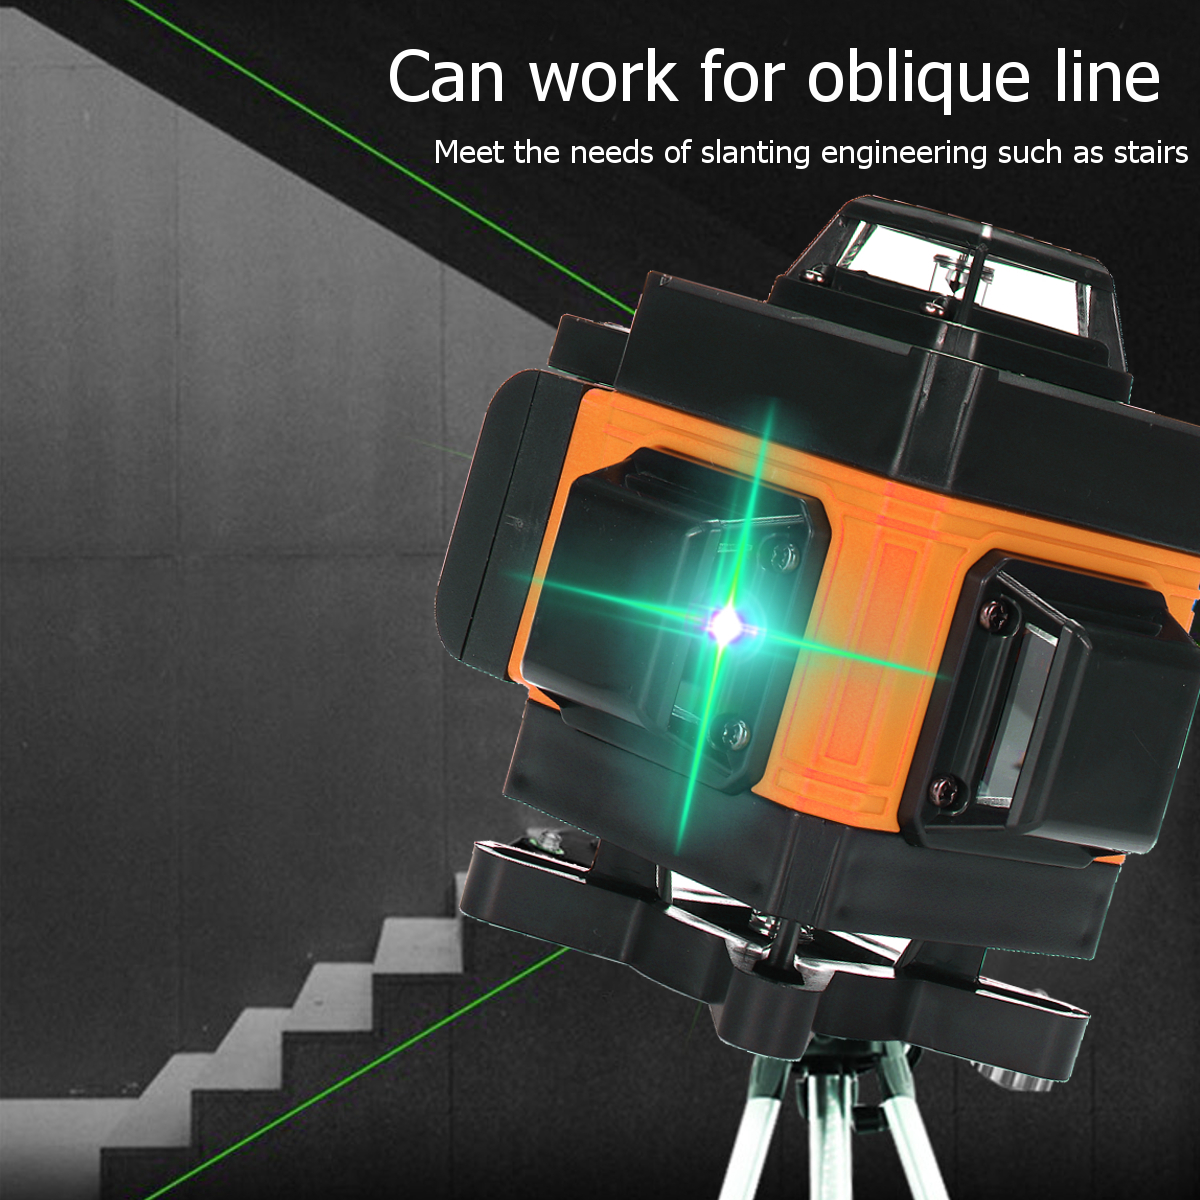 16-Lines-3D-360deg-Green-Laser-Level-Self-Leveling-Cross-Line-Horizontal-LCD-Tool-1714972-11